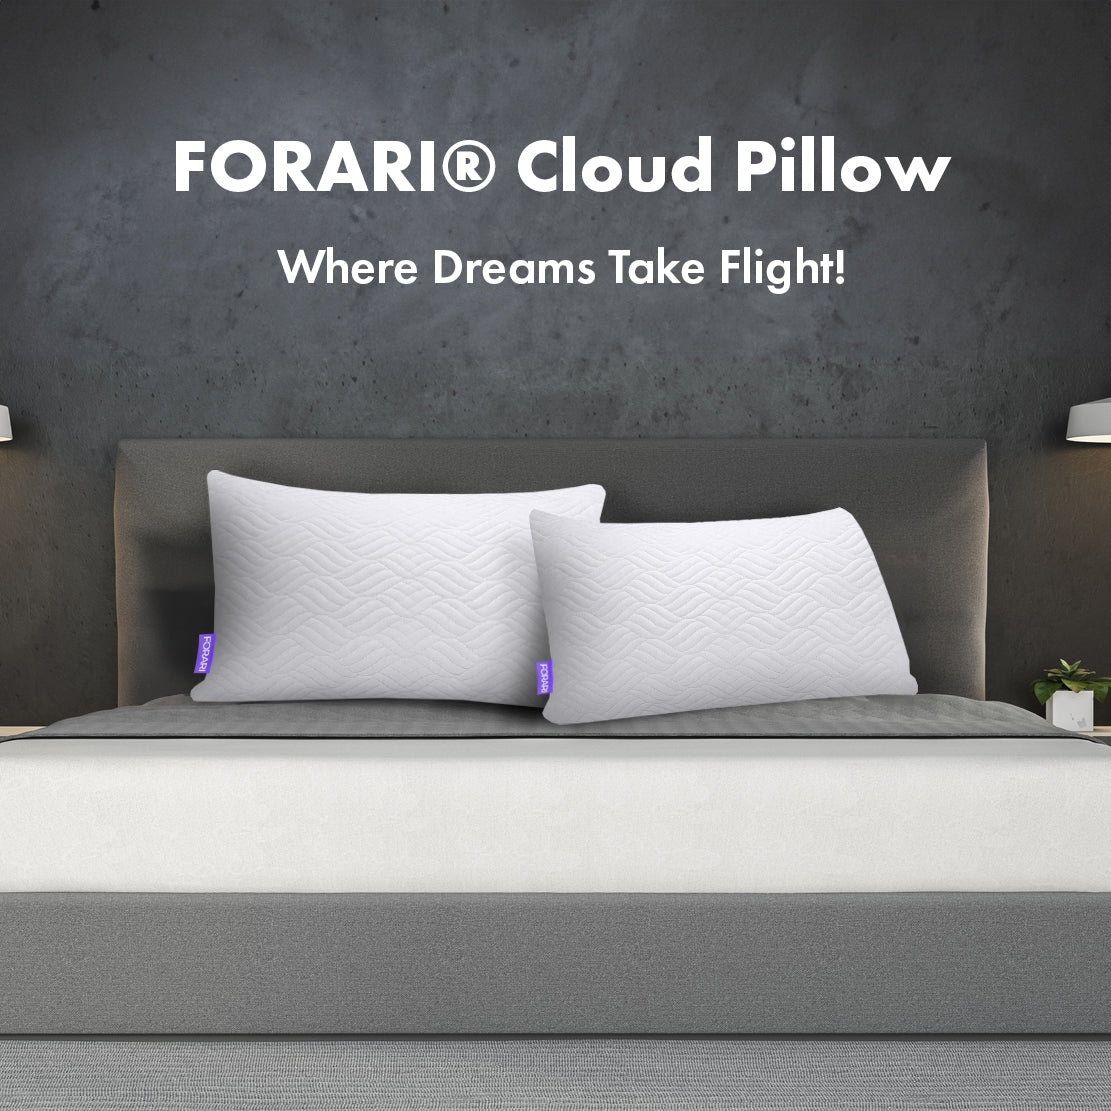 FORARI® Cloud Pillow